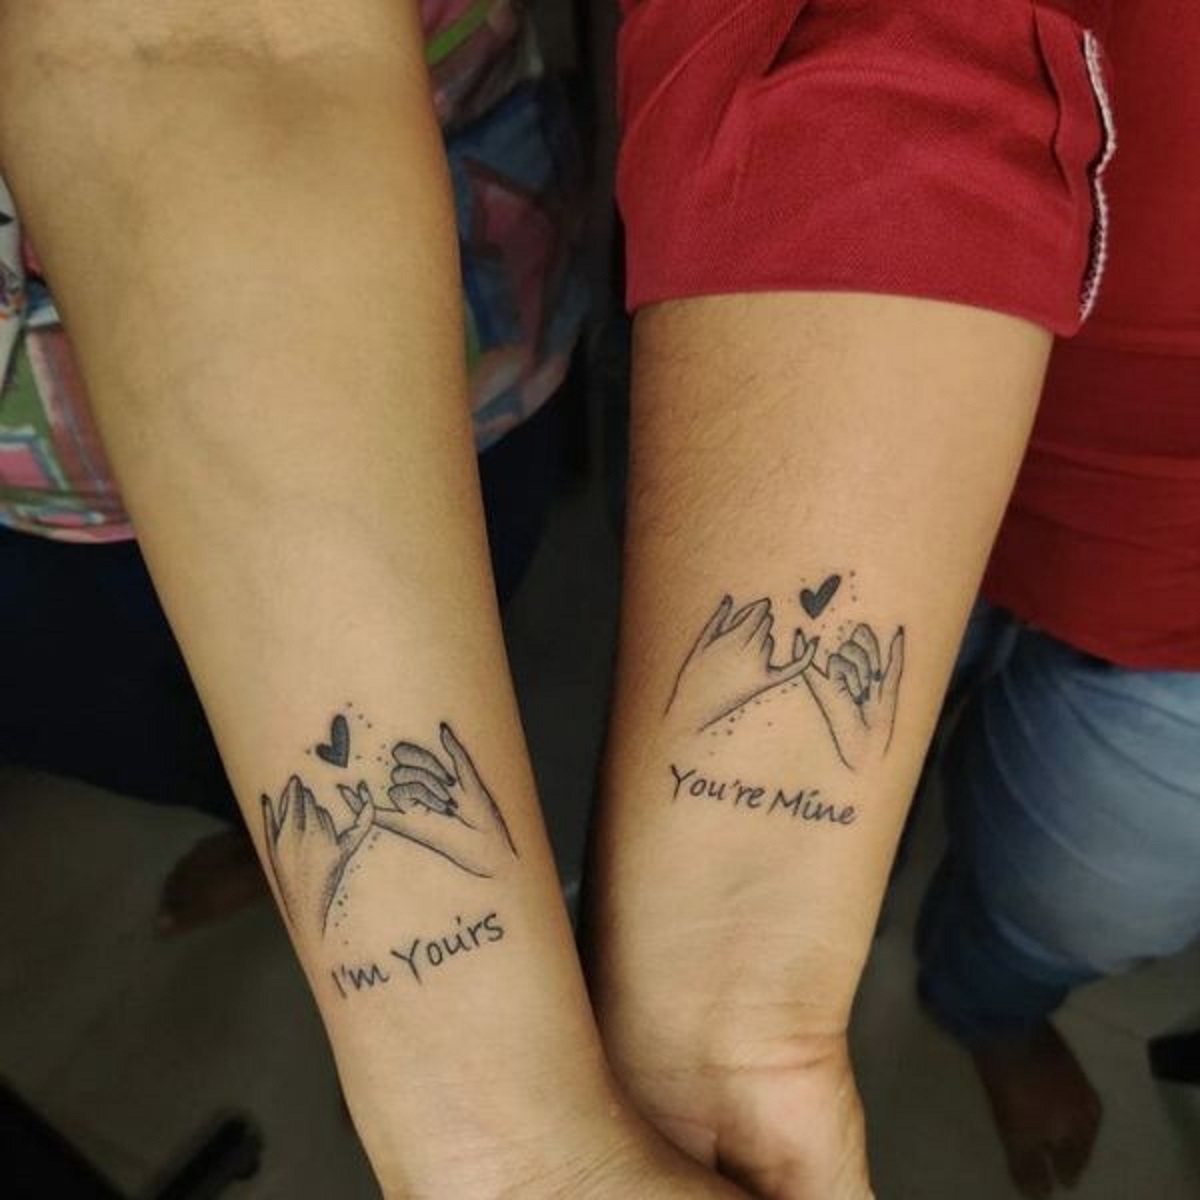 Medusa Tattoo Club - Địa chỉ xăm hình nghệ thuật uy tín được nhiều bạn trẻ  tin tưởng tại Hà Nội